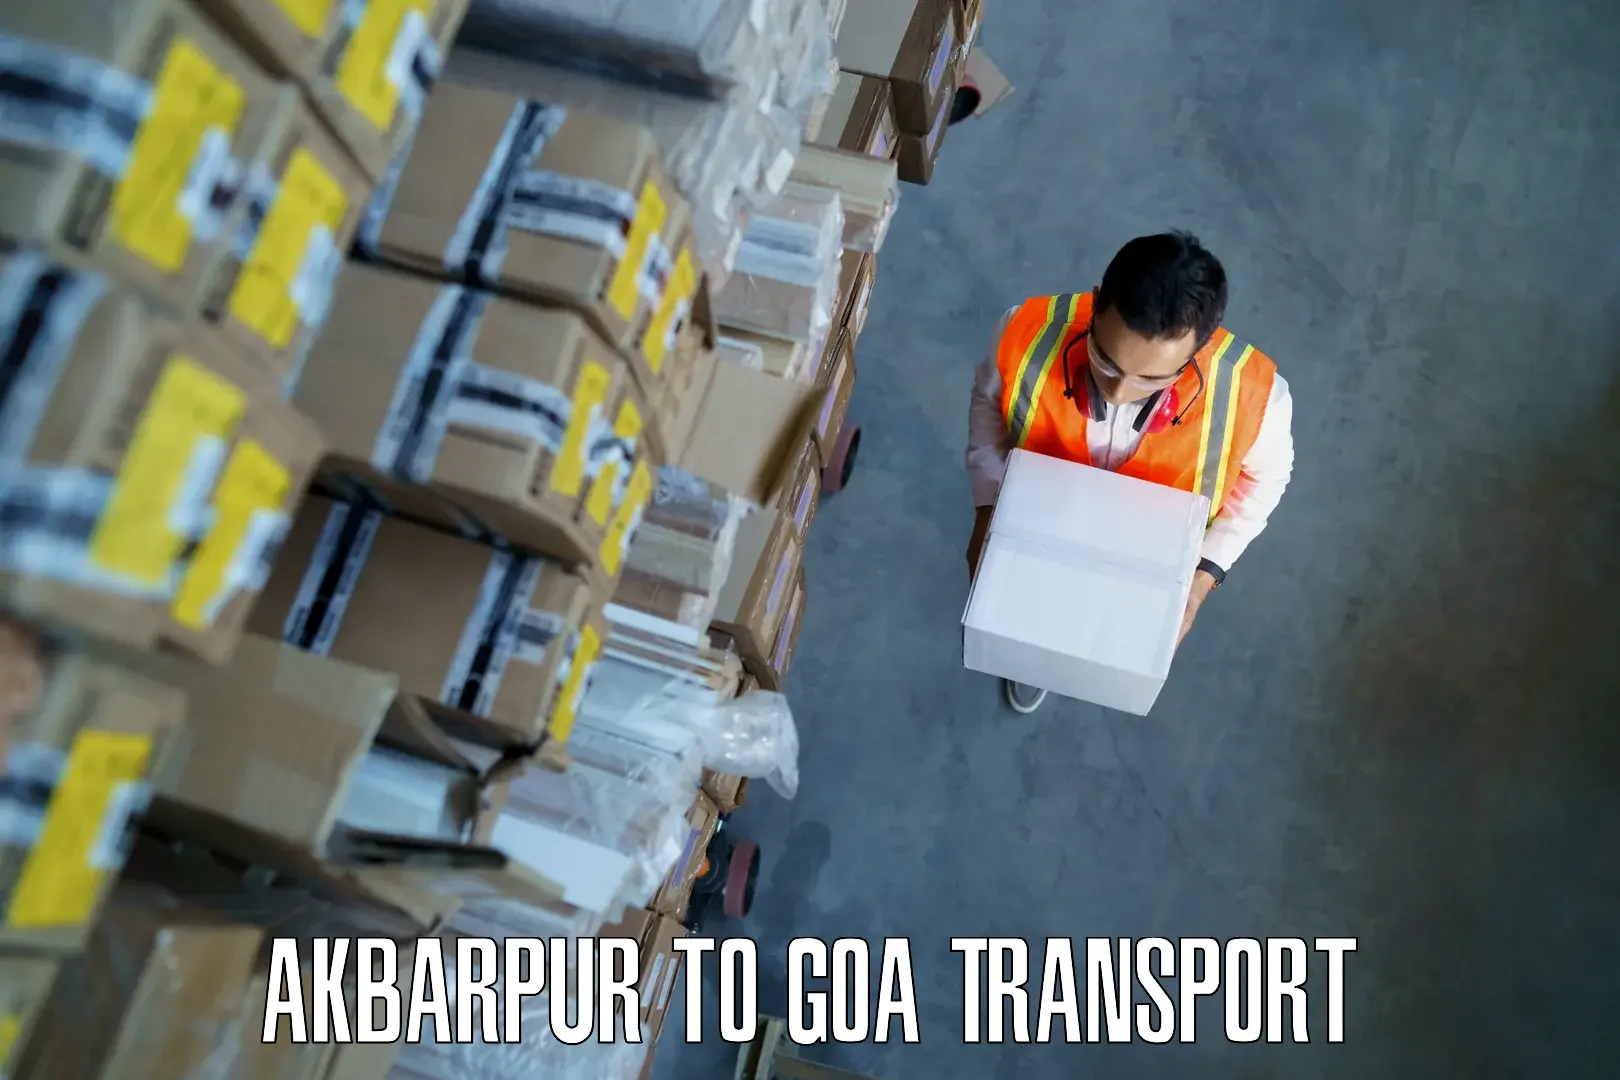 Furniture transport service Akbarpur to Mormugao Port